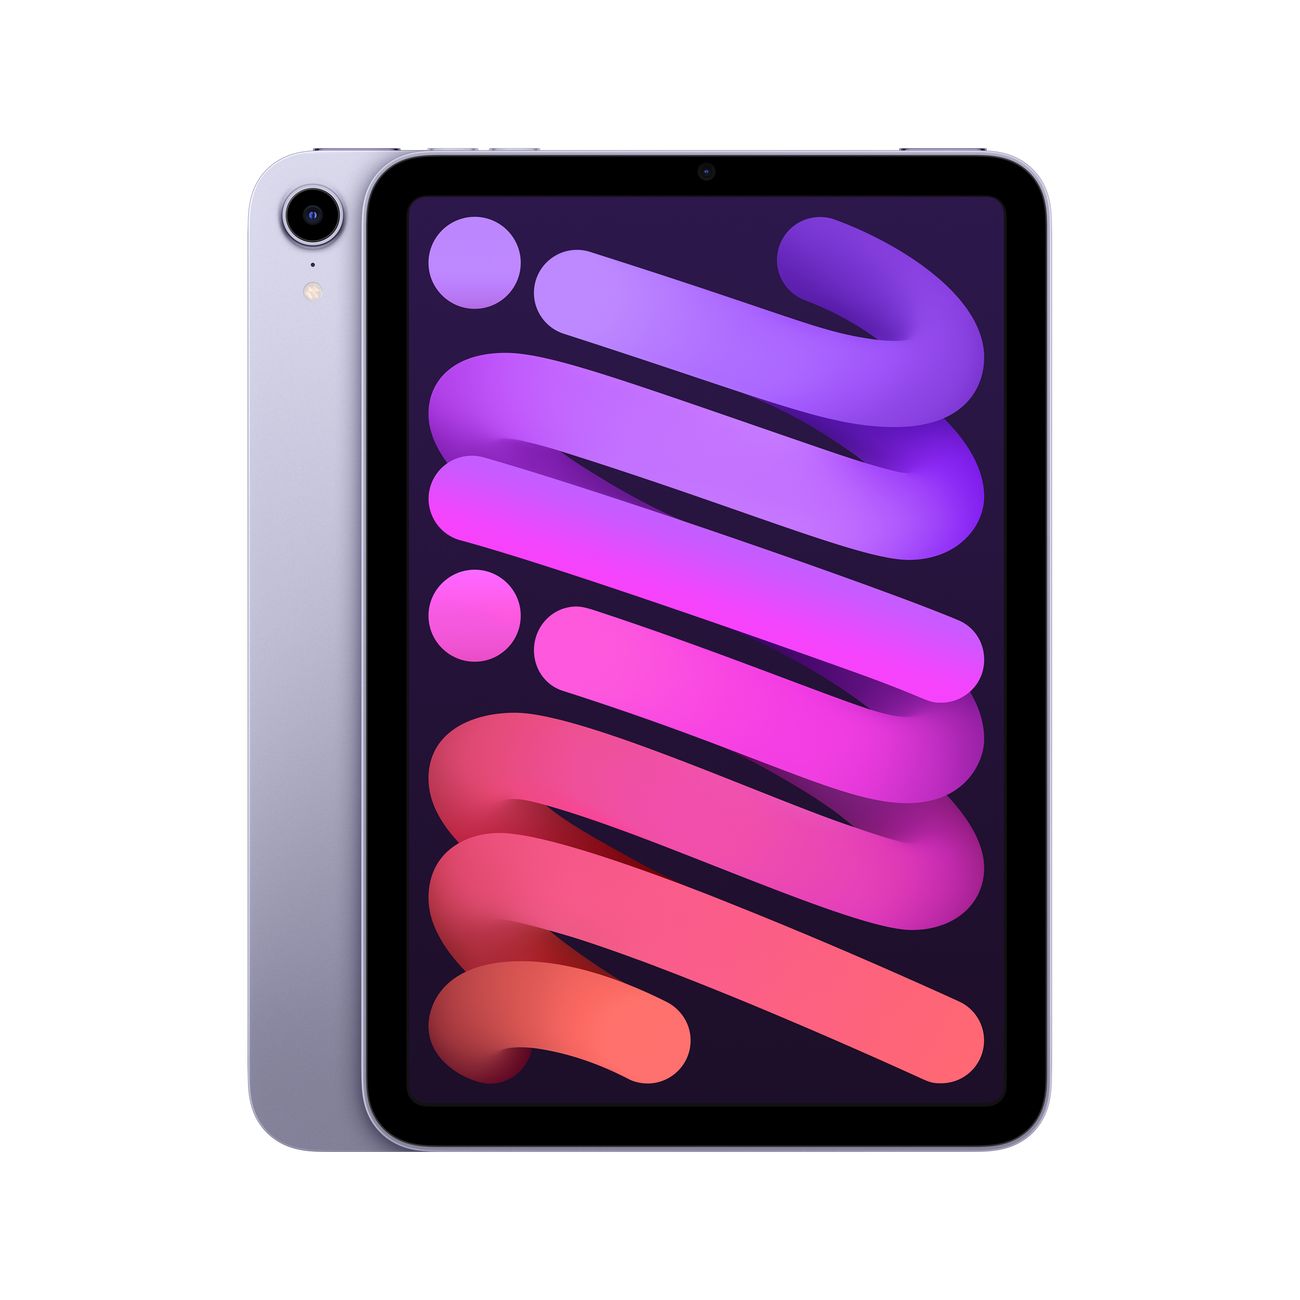 Купить планшет apple ipad mini wi-fi+cell 64gb purple (mk8e3) Apple iPad mini в официальном магазине Apple, Samsung, Xiaomi. iPixel.ru Купить, заказ, кредит, рассрочка, отзывы,  характеристики, цена,  фотографии, в подарок.